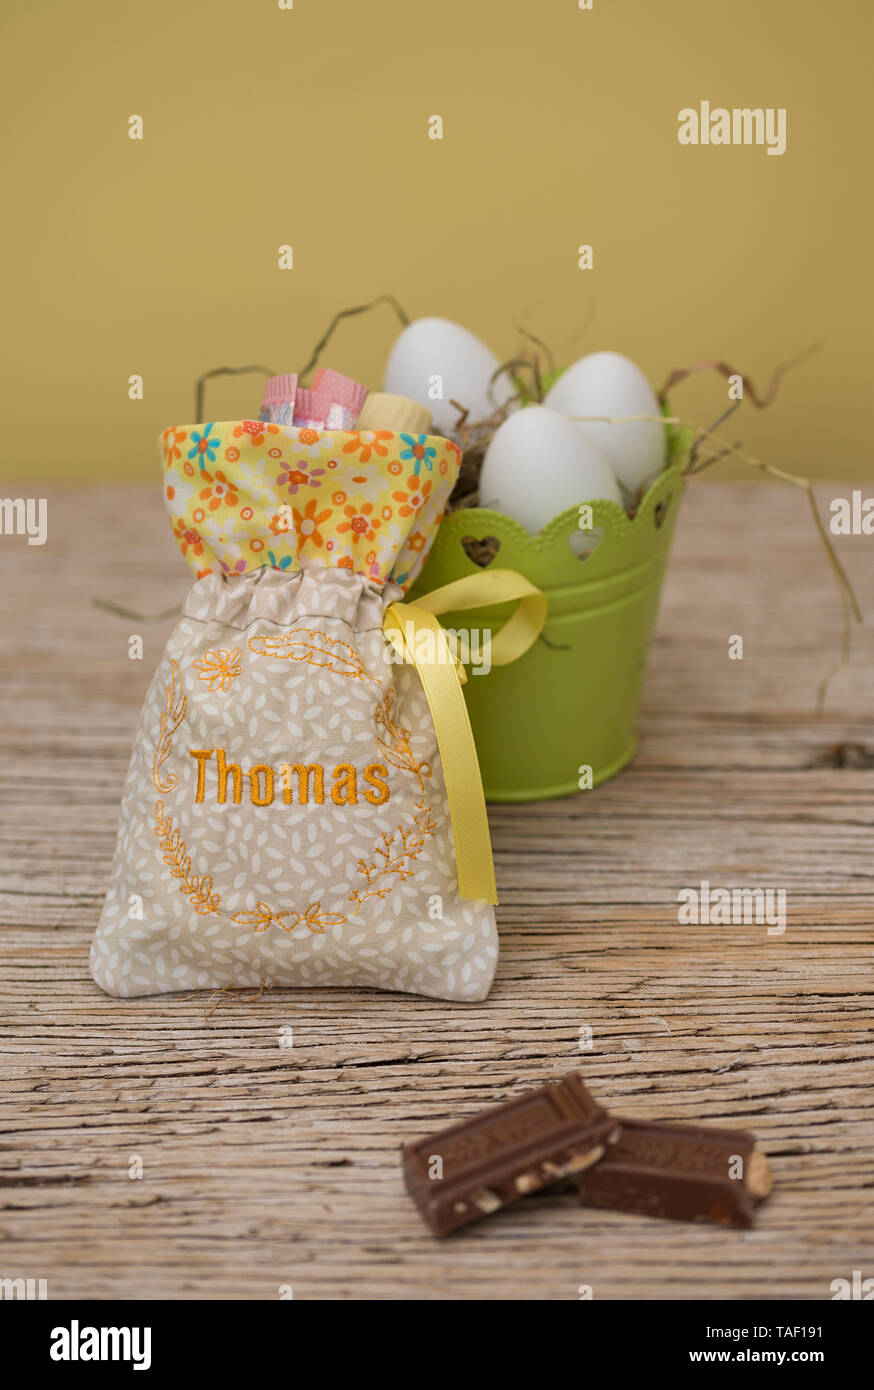 Un petit sac avec des cadeaux a une jolie broderie. C'est le nom Thomas. Derrière le sac est exemplaire de l'espace et un nid de Pâques avec des oeufs. De couleur pastel natur Banque D'Images